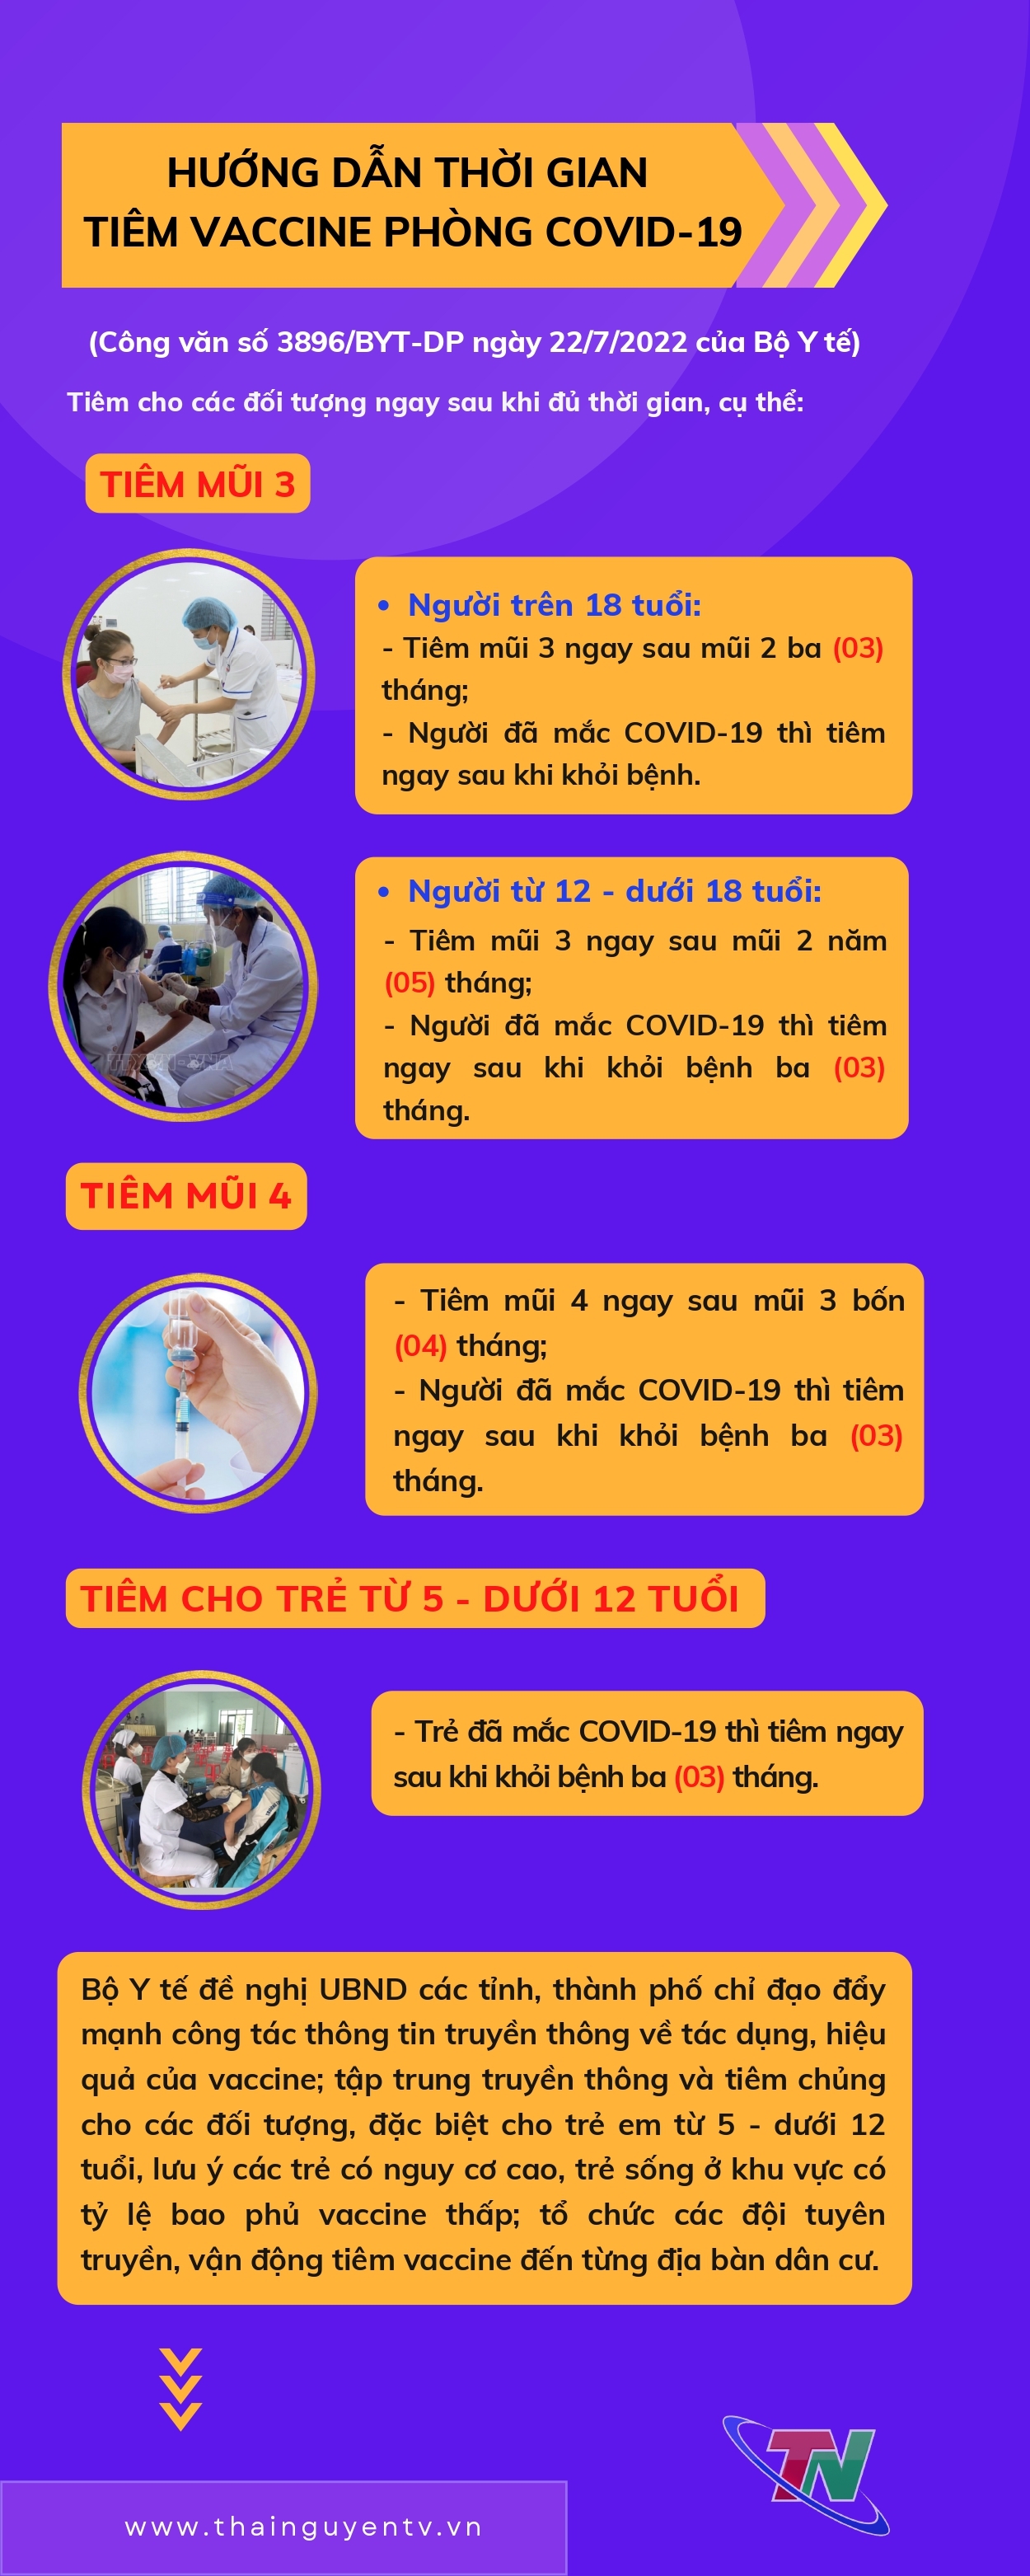 [Infographic] Hướng dẫn thời gian tiêm vaccine phòng COVID-19